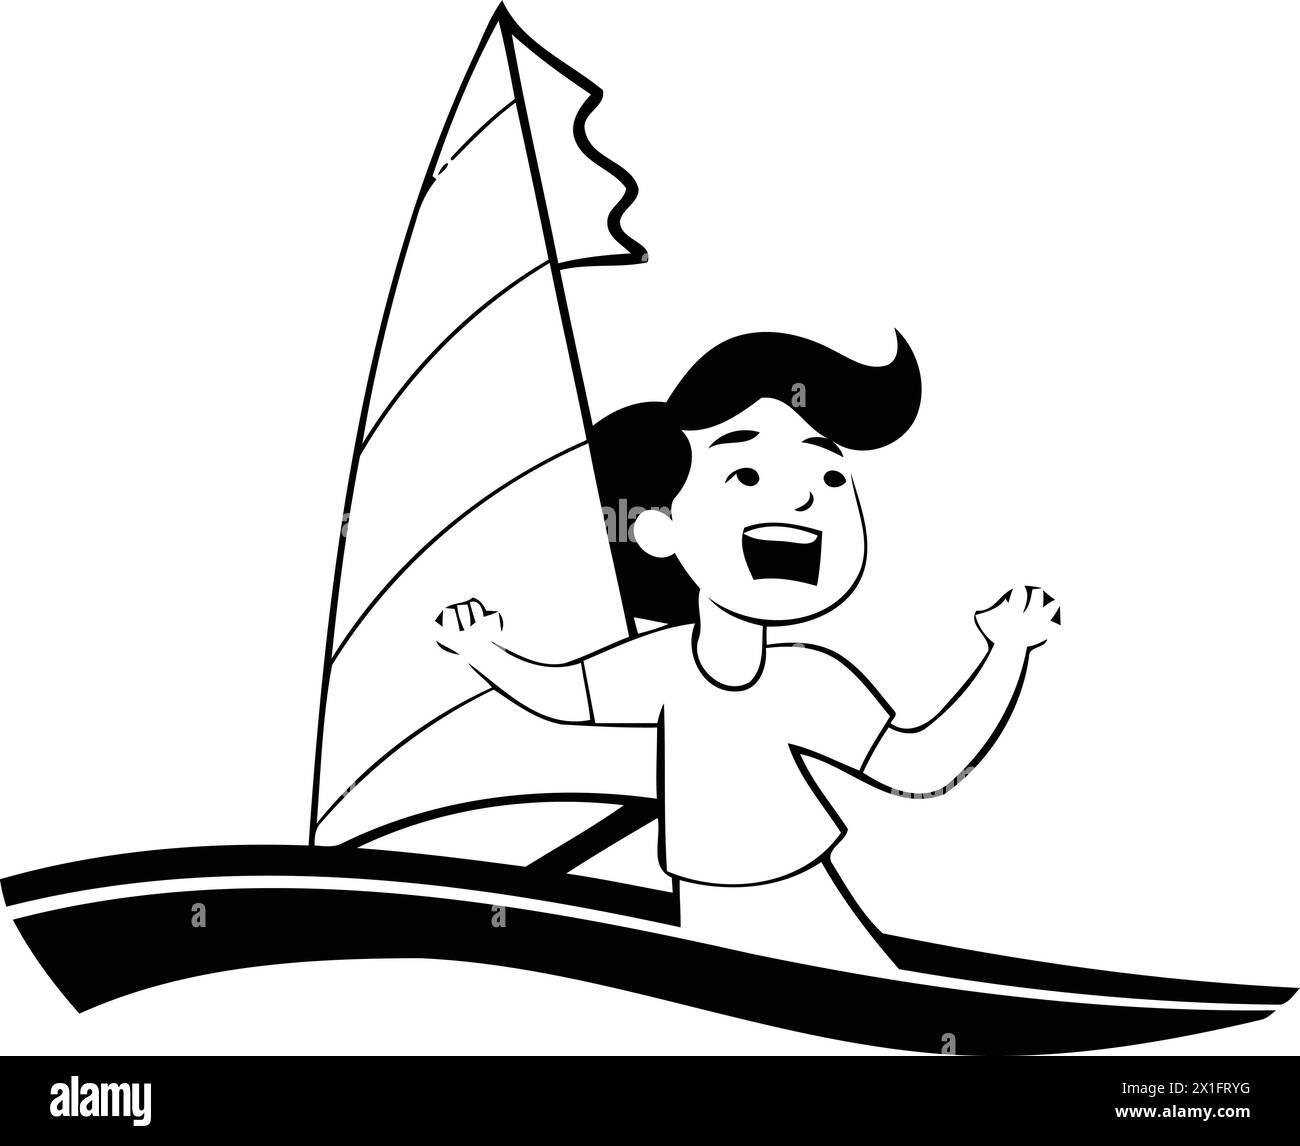 Ragazzo che fa windsurf. Illustrazione vettoriale in stile cartone animato piatto su sfondo bianco. Illustrazione Vettoriale